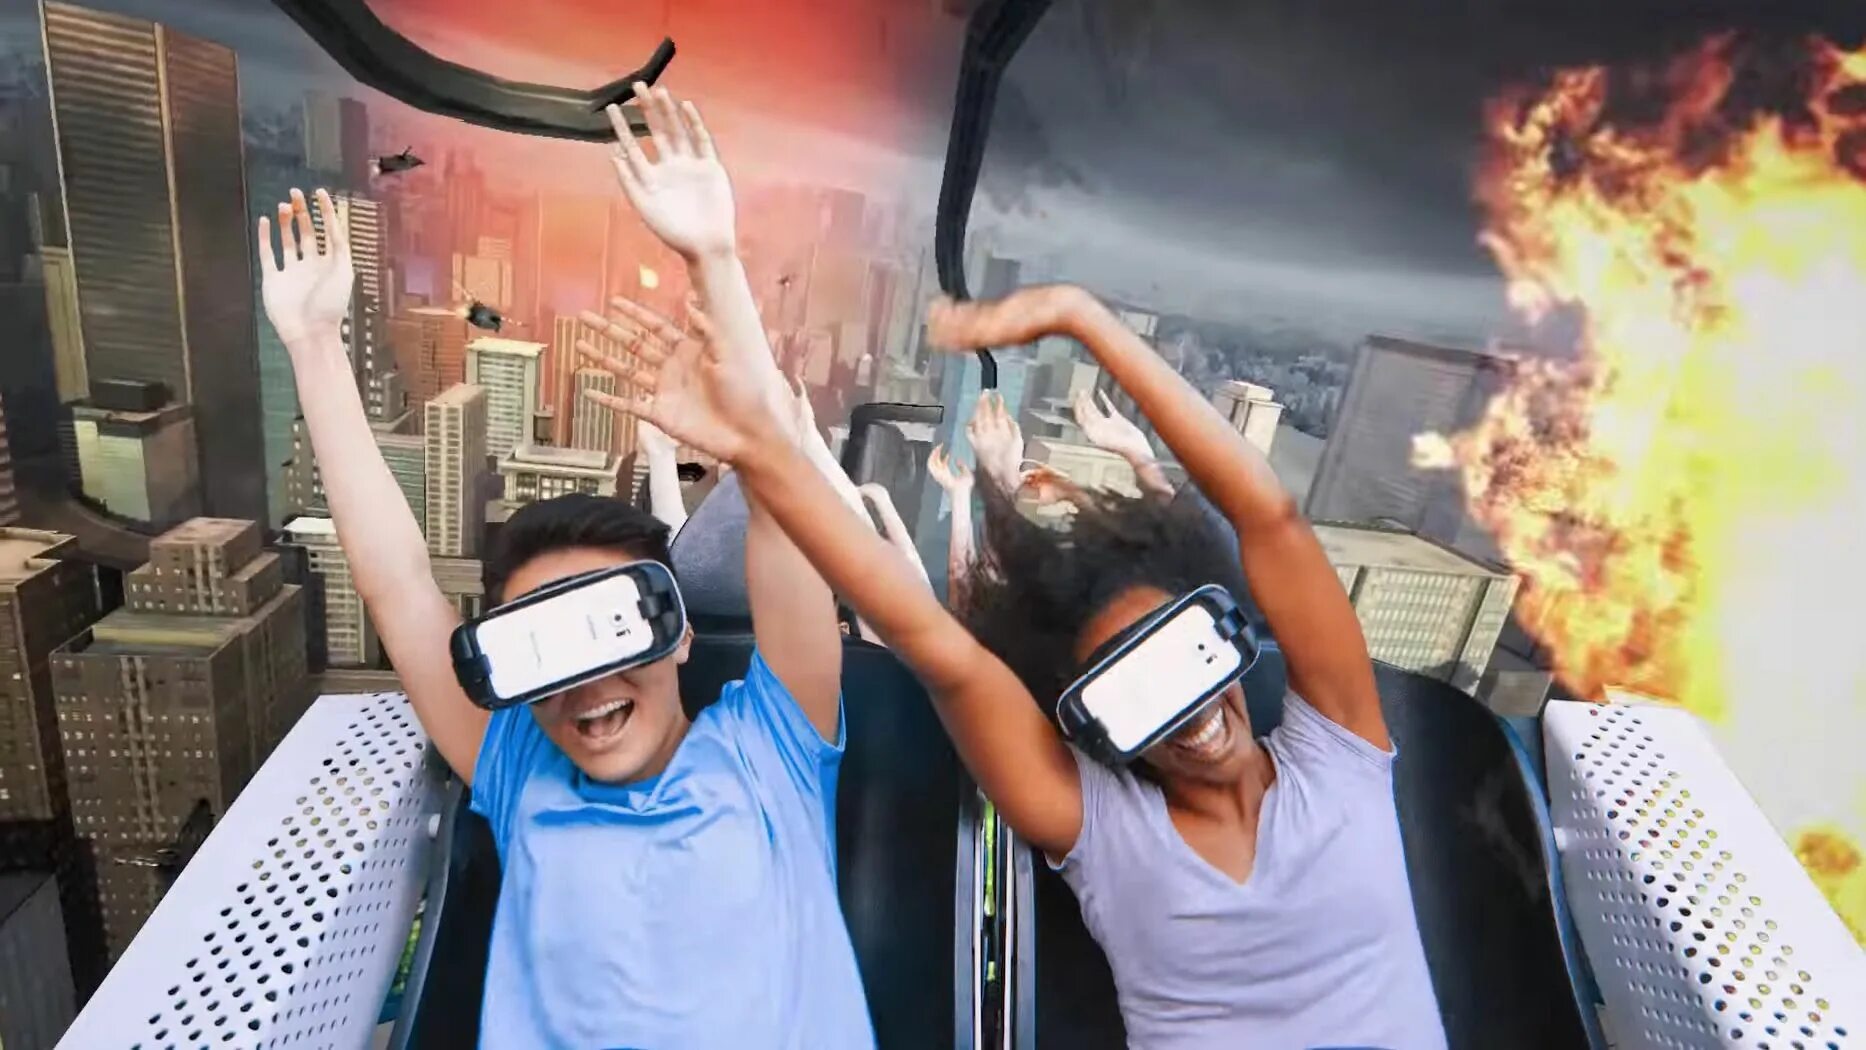 Последняя реальность 21. Виртуальная реальность горки. Виртуальная реальность веселье. Очки виртуальной реальности крутые. Девушки дополненной реальности.